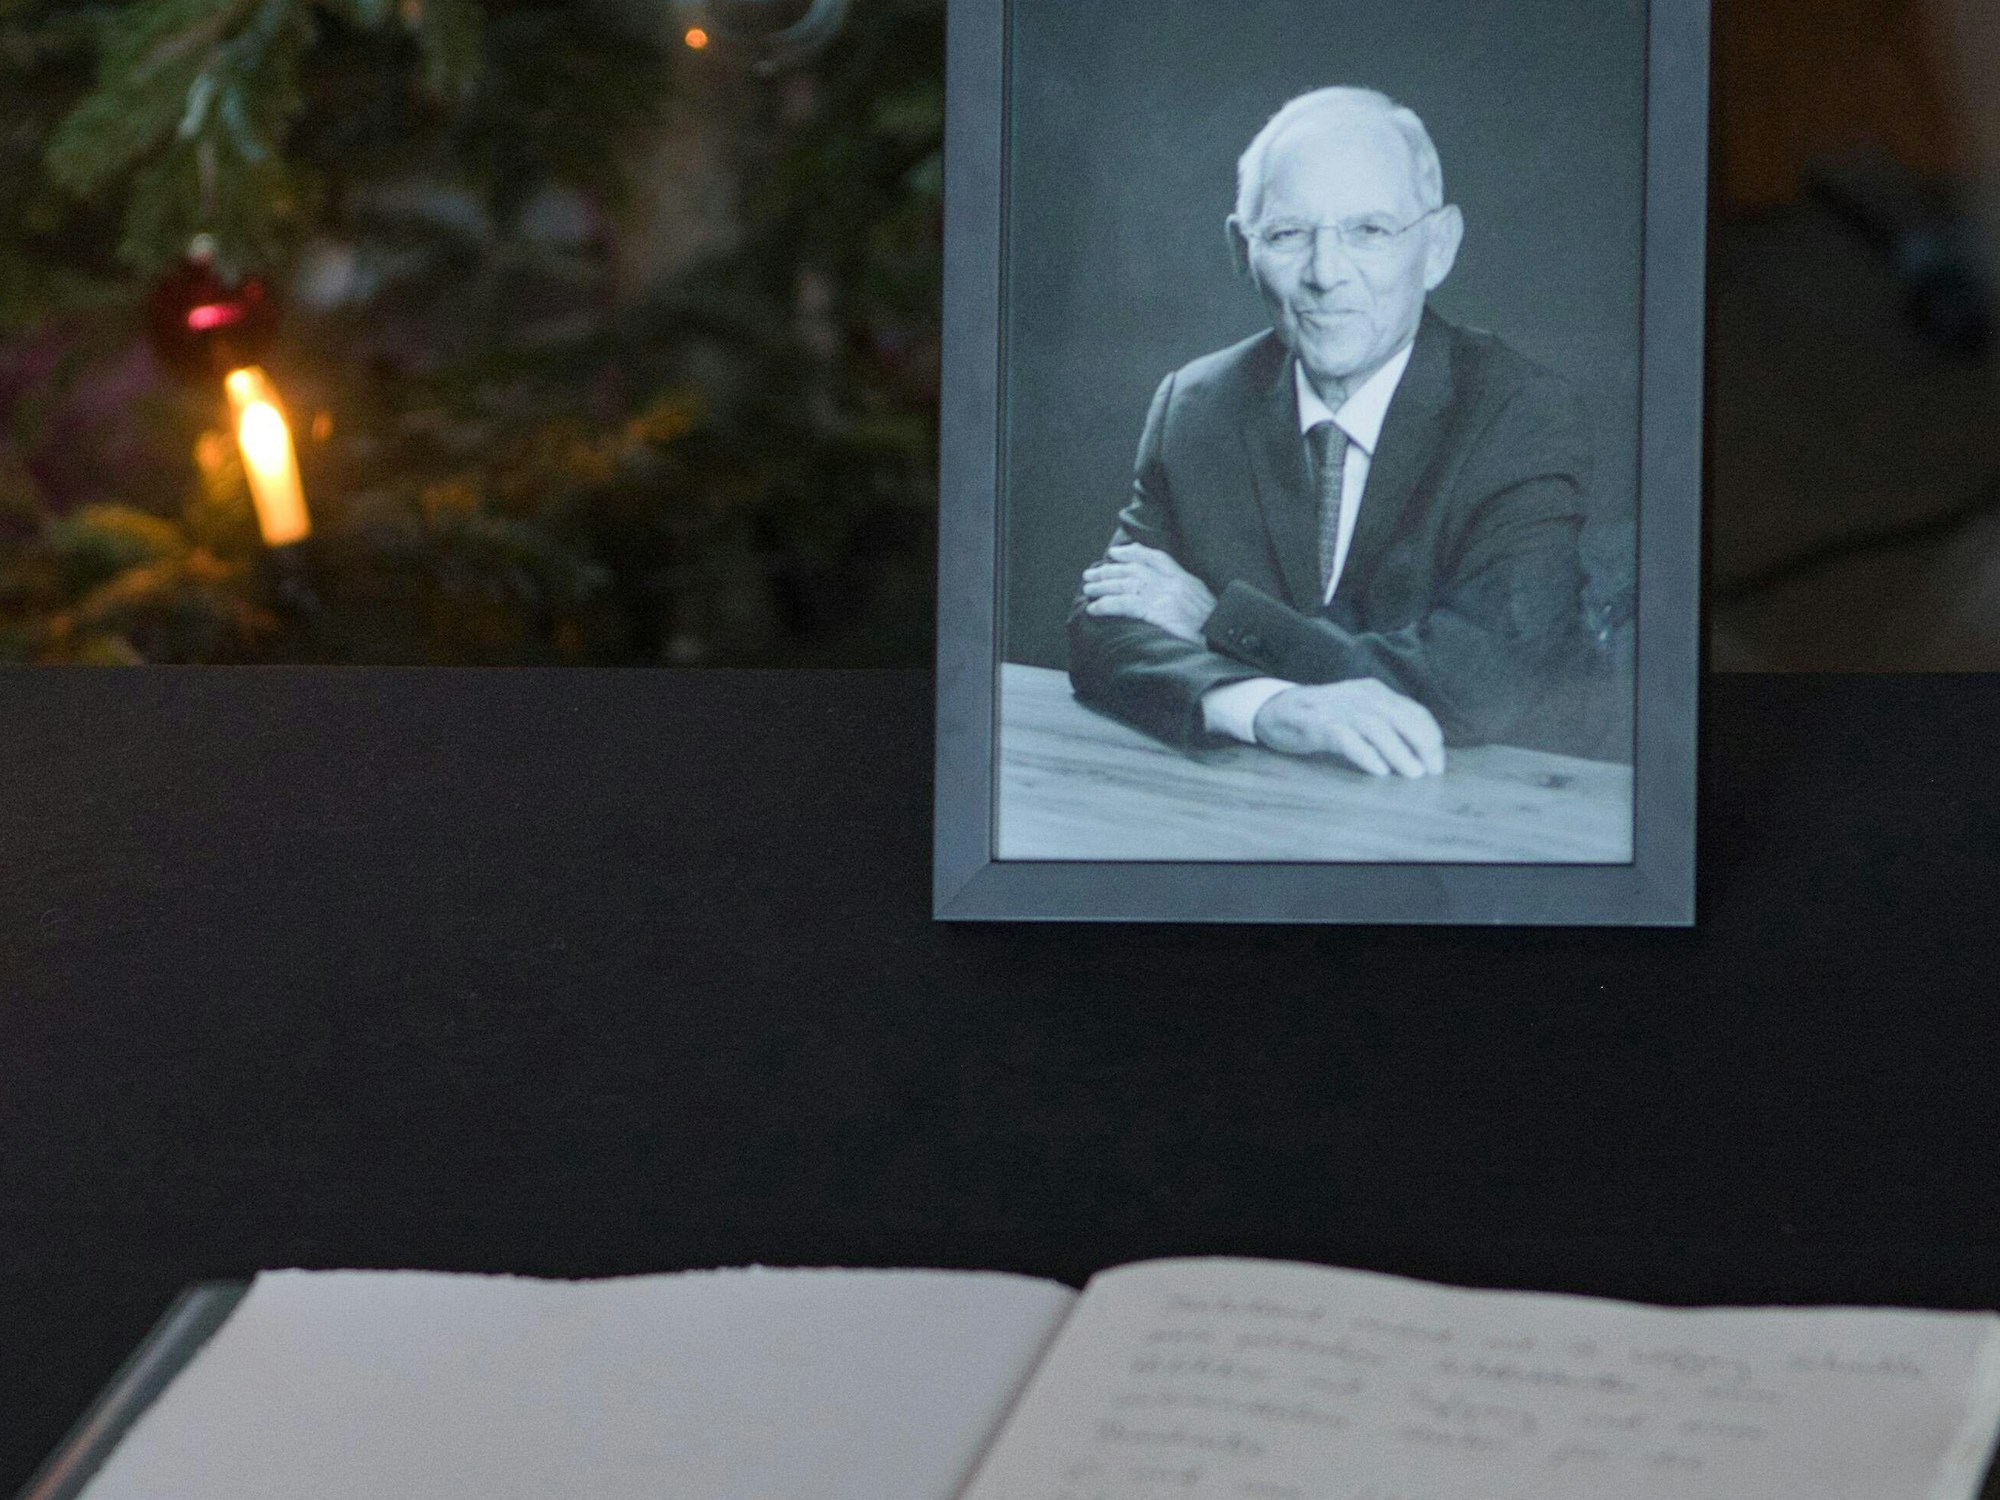 Ein Kondolenzbuch für den verstorbenen Politiker Wolfgang Schäuble (CDU) liegt auf einem Tisch in der Landesvertretung von Baden-Württemberg.